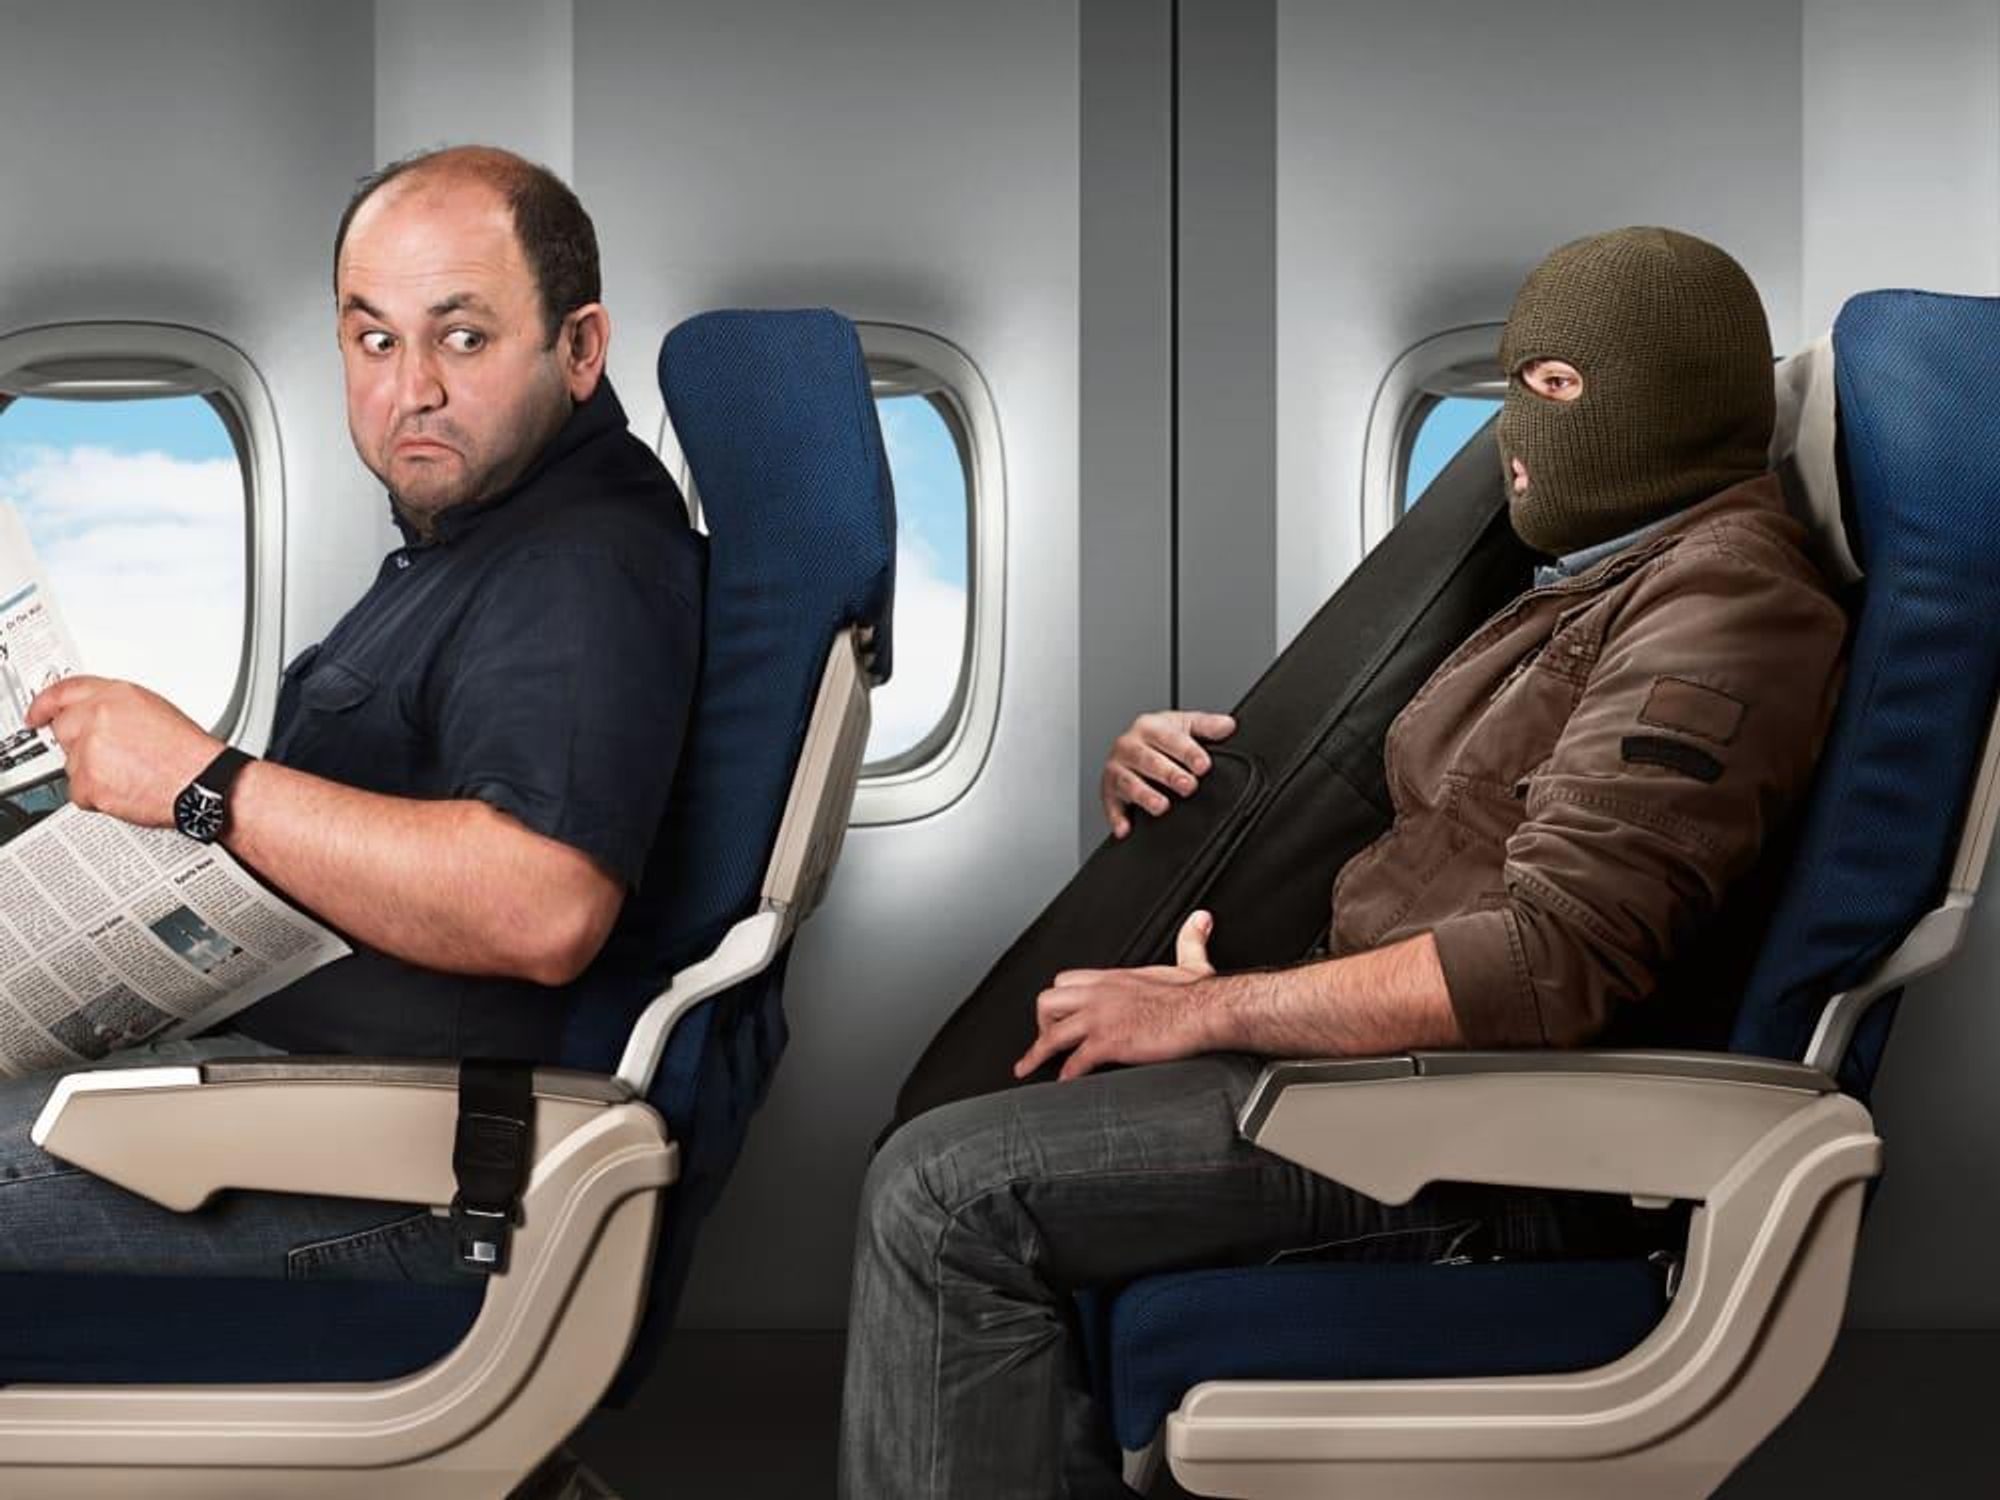 travel jet airline crazy traveler mask funny